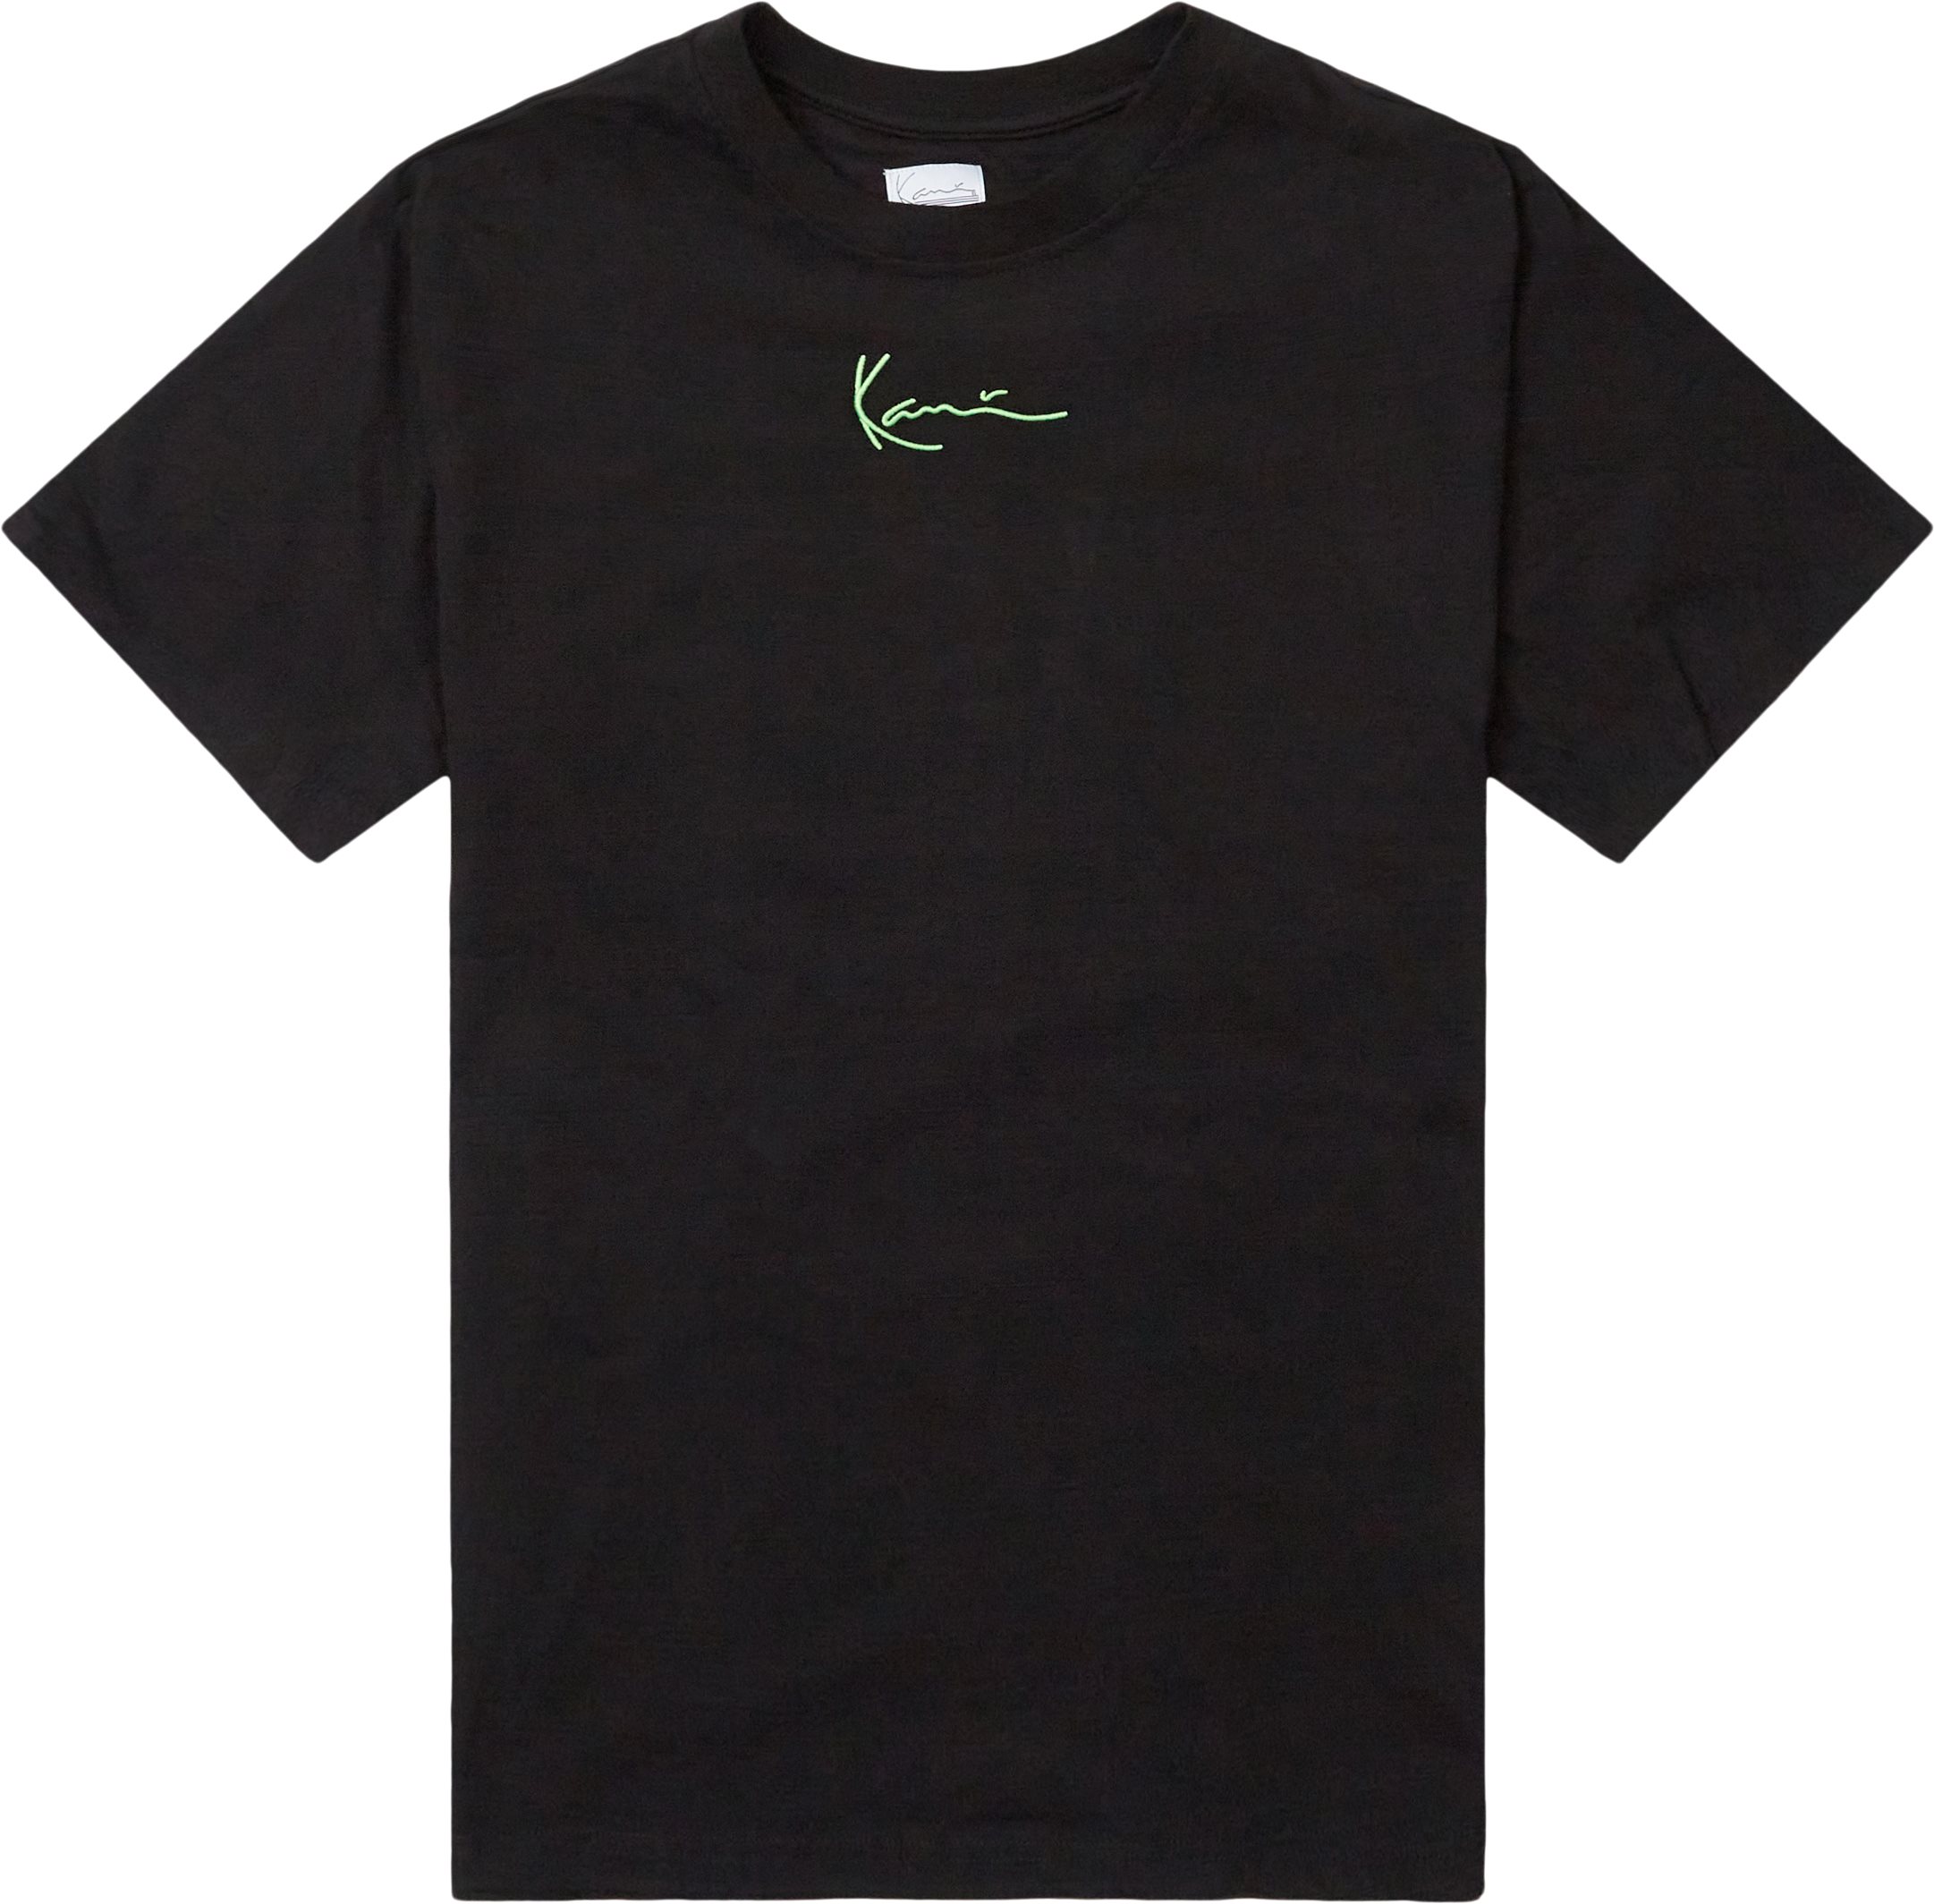 Small Signature Print Tee - T-shirts - Regular fit - Svart